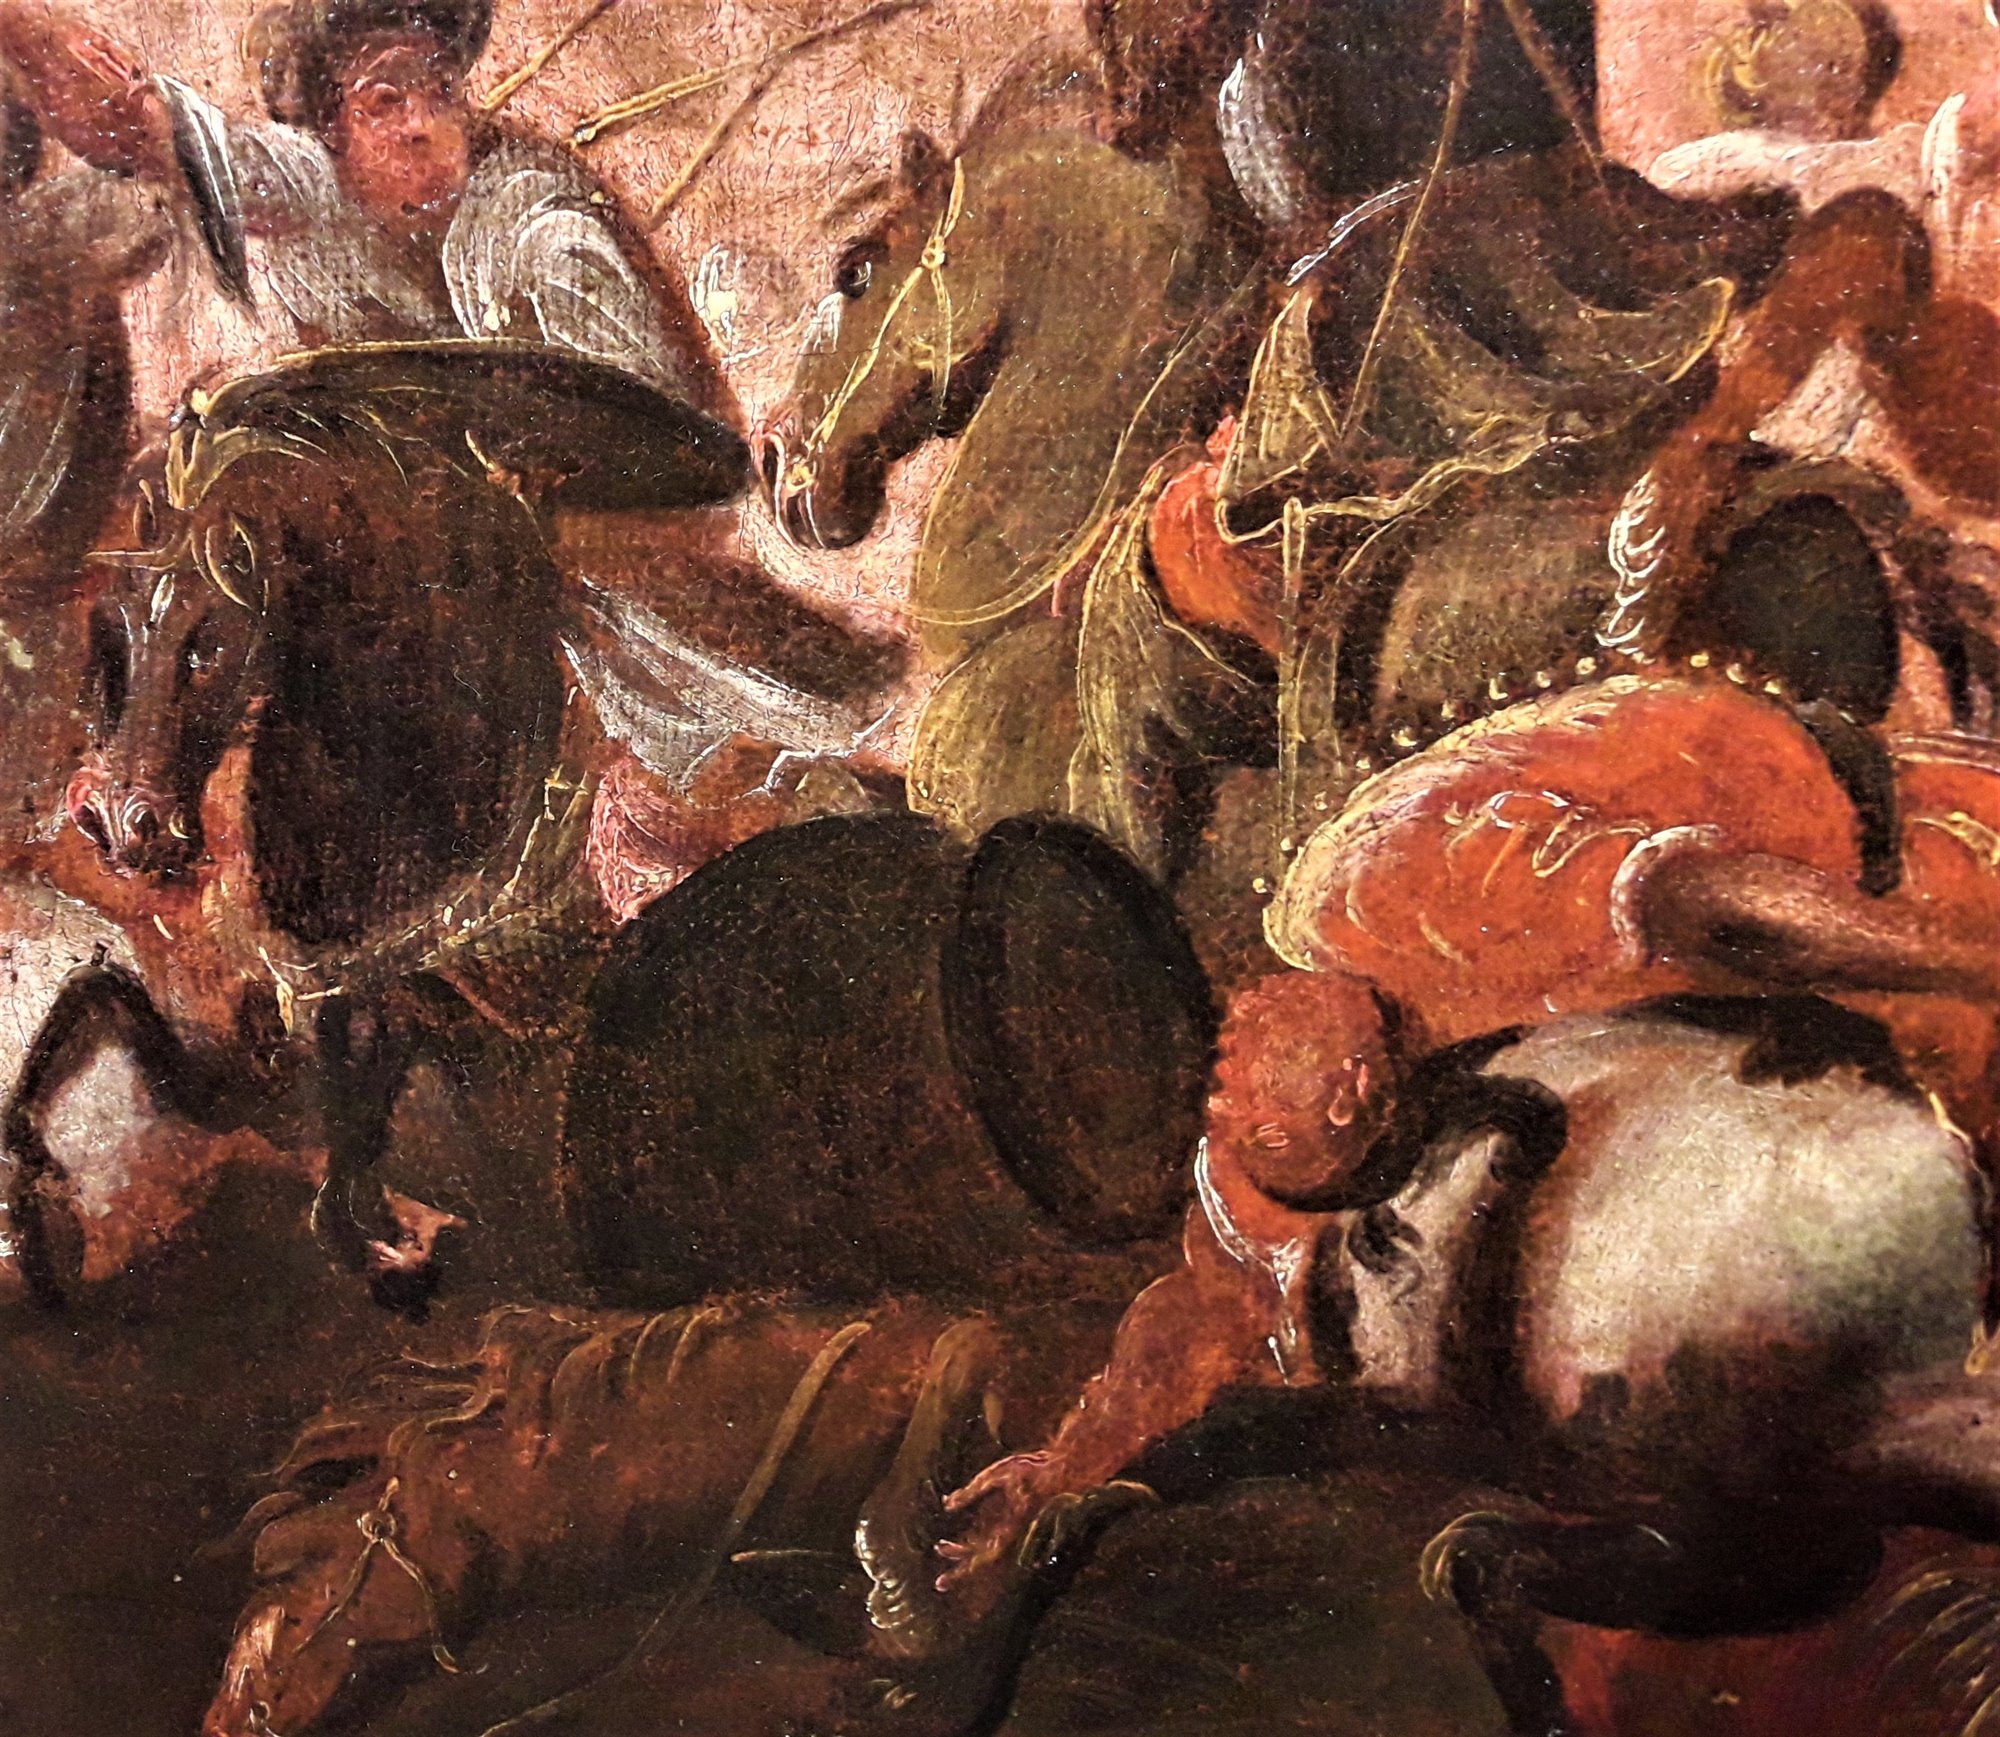 Battaglia tra Cavalieri Turchi e Cristiani